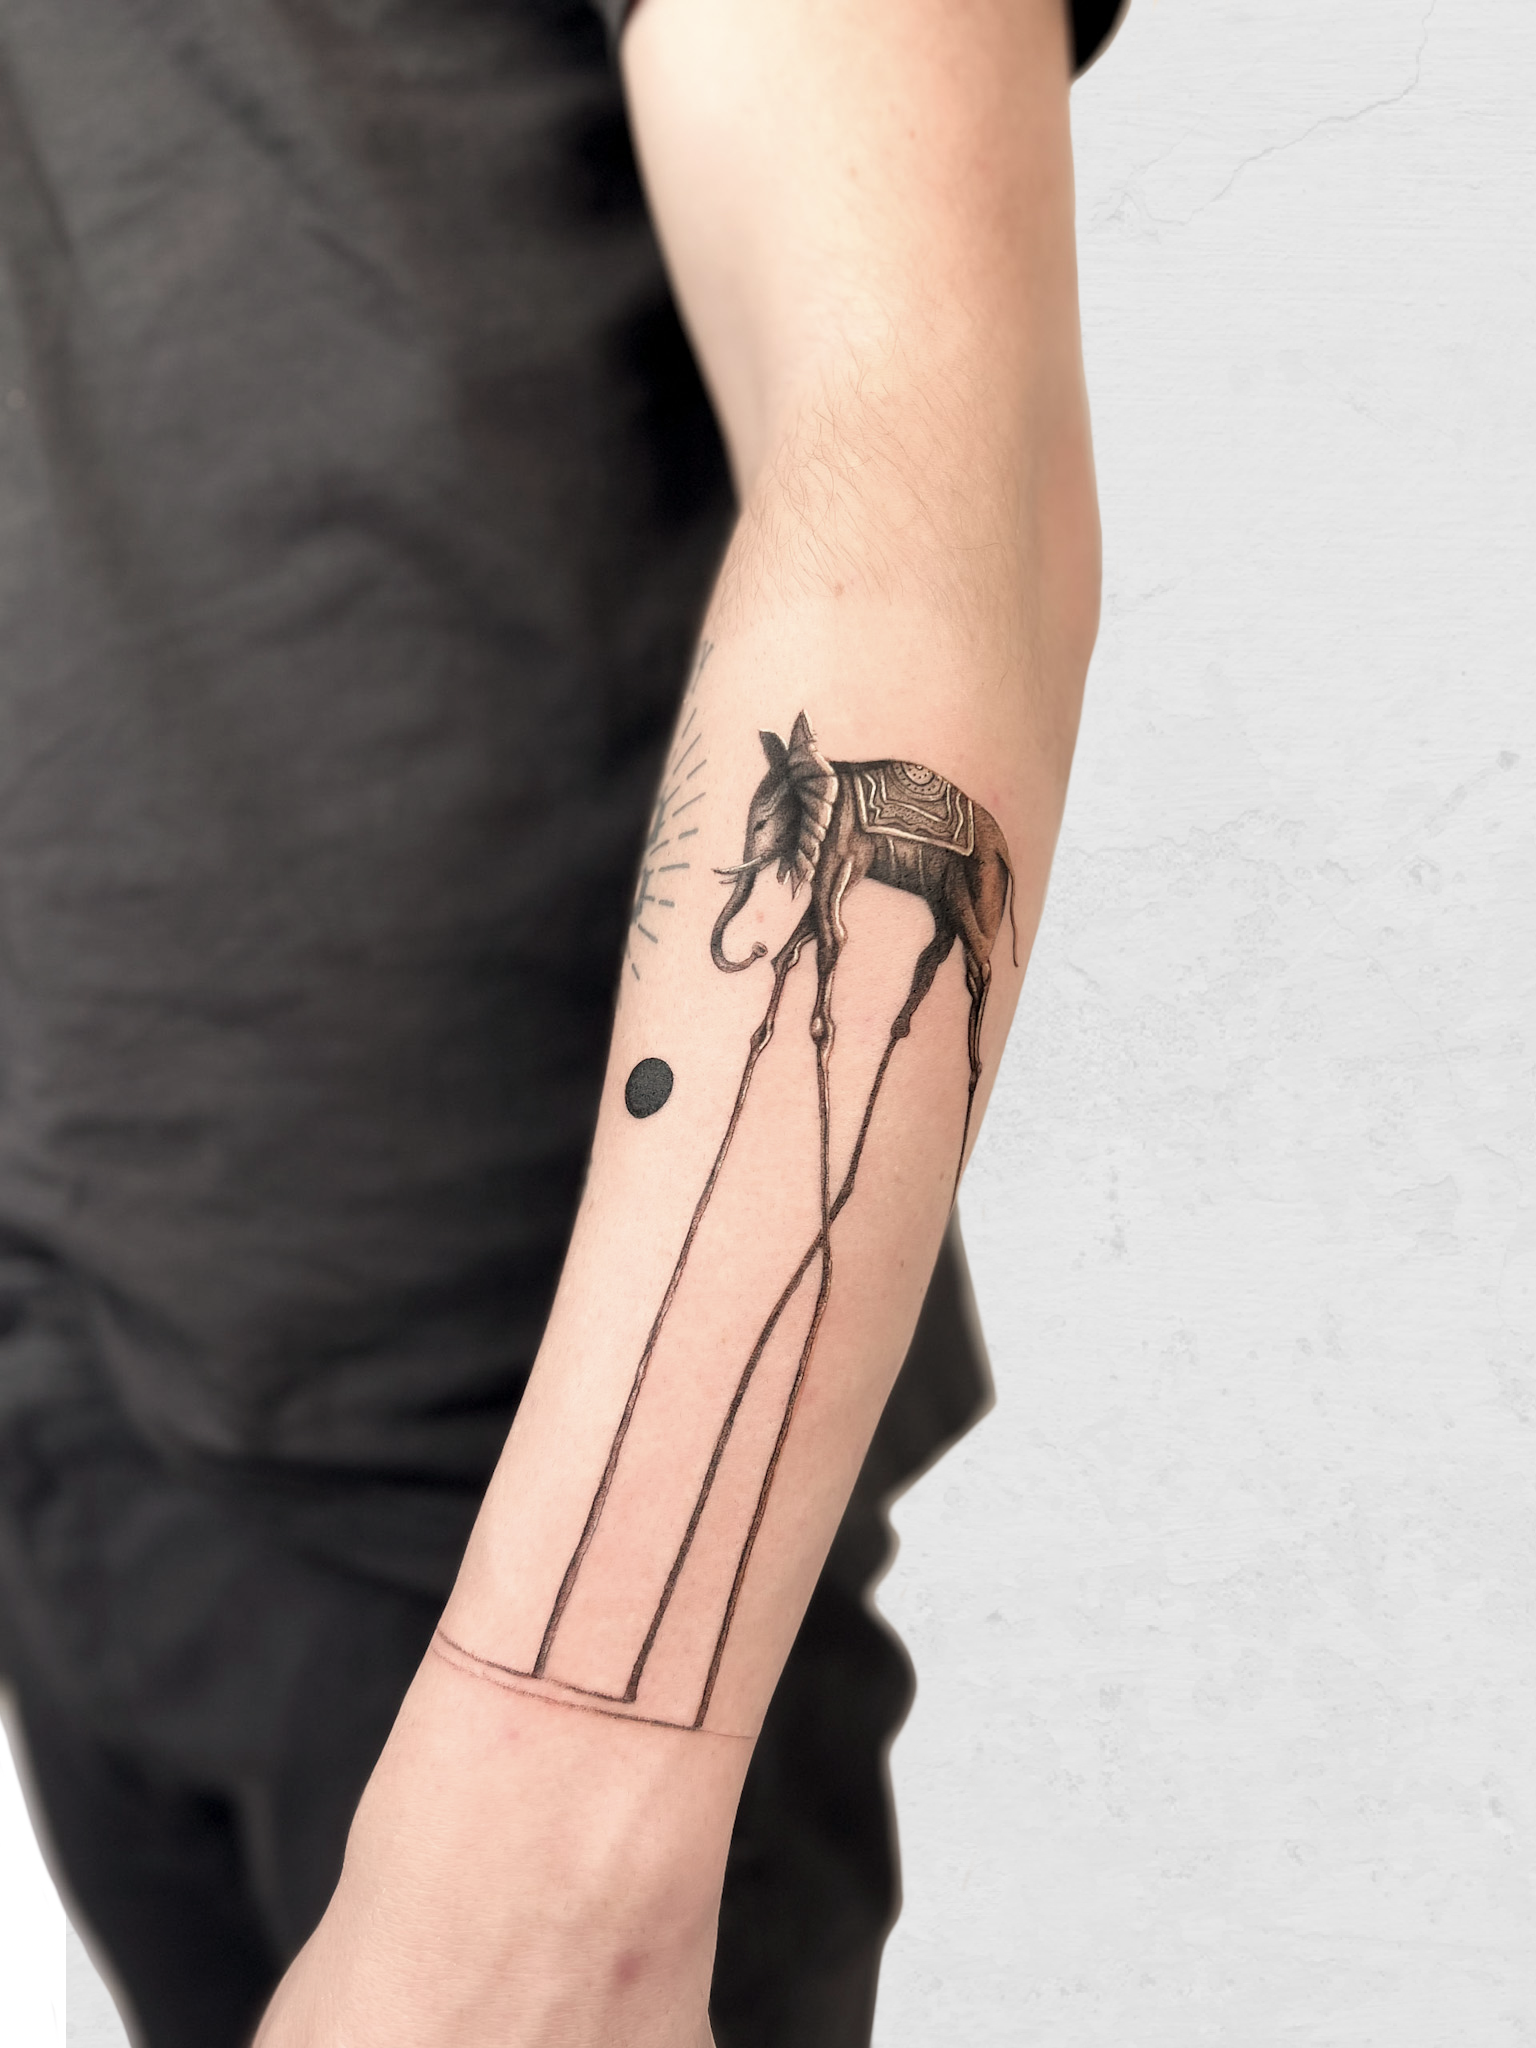 Tattoo Artist Sydney | Tattoo Shop | Gordotaub Tattoo